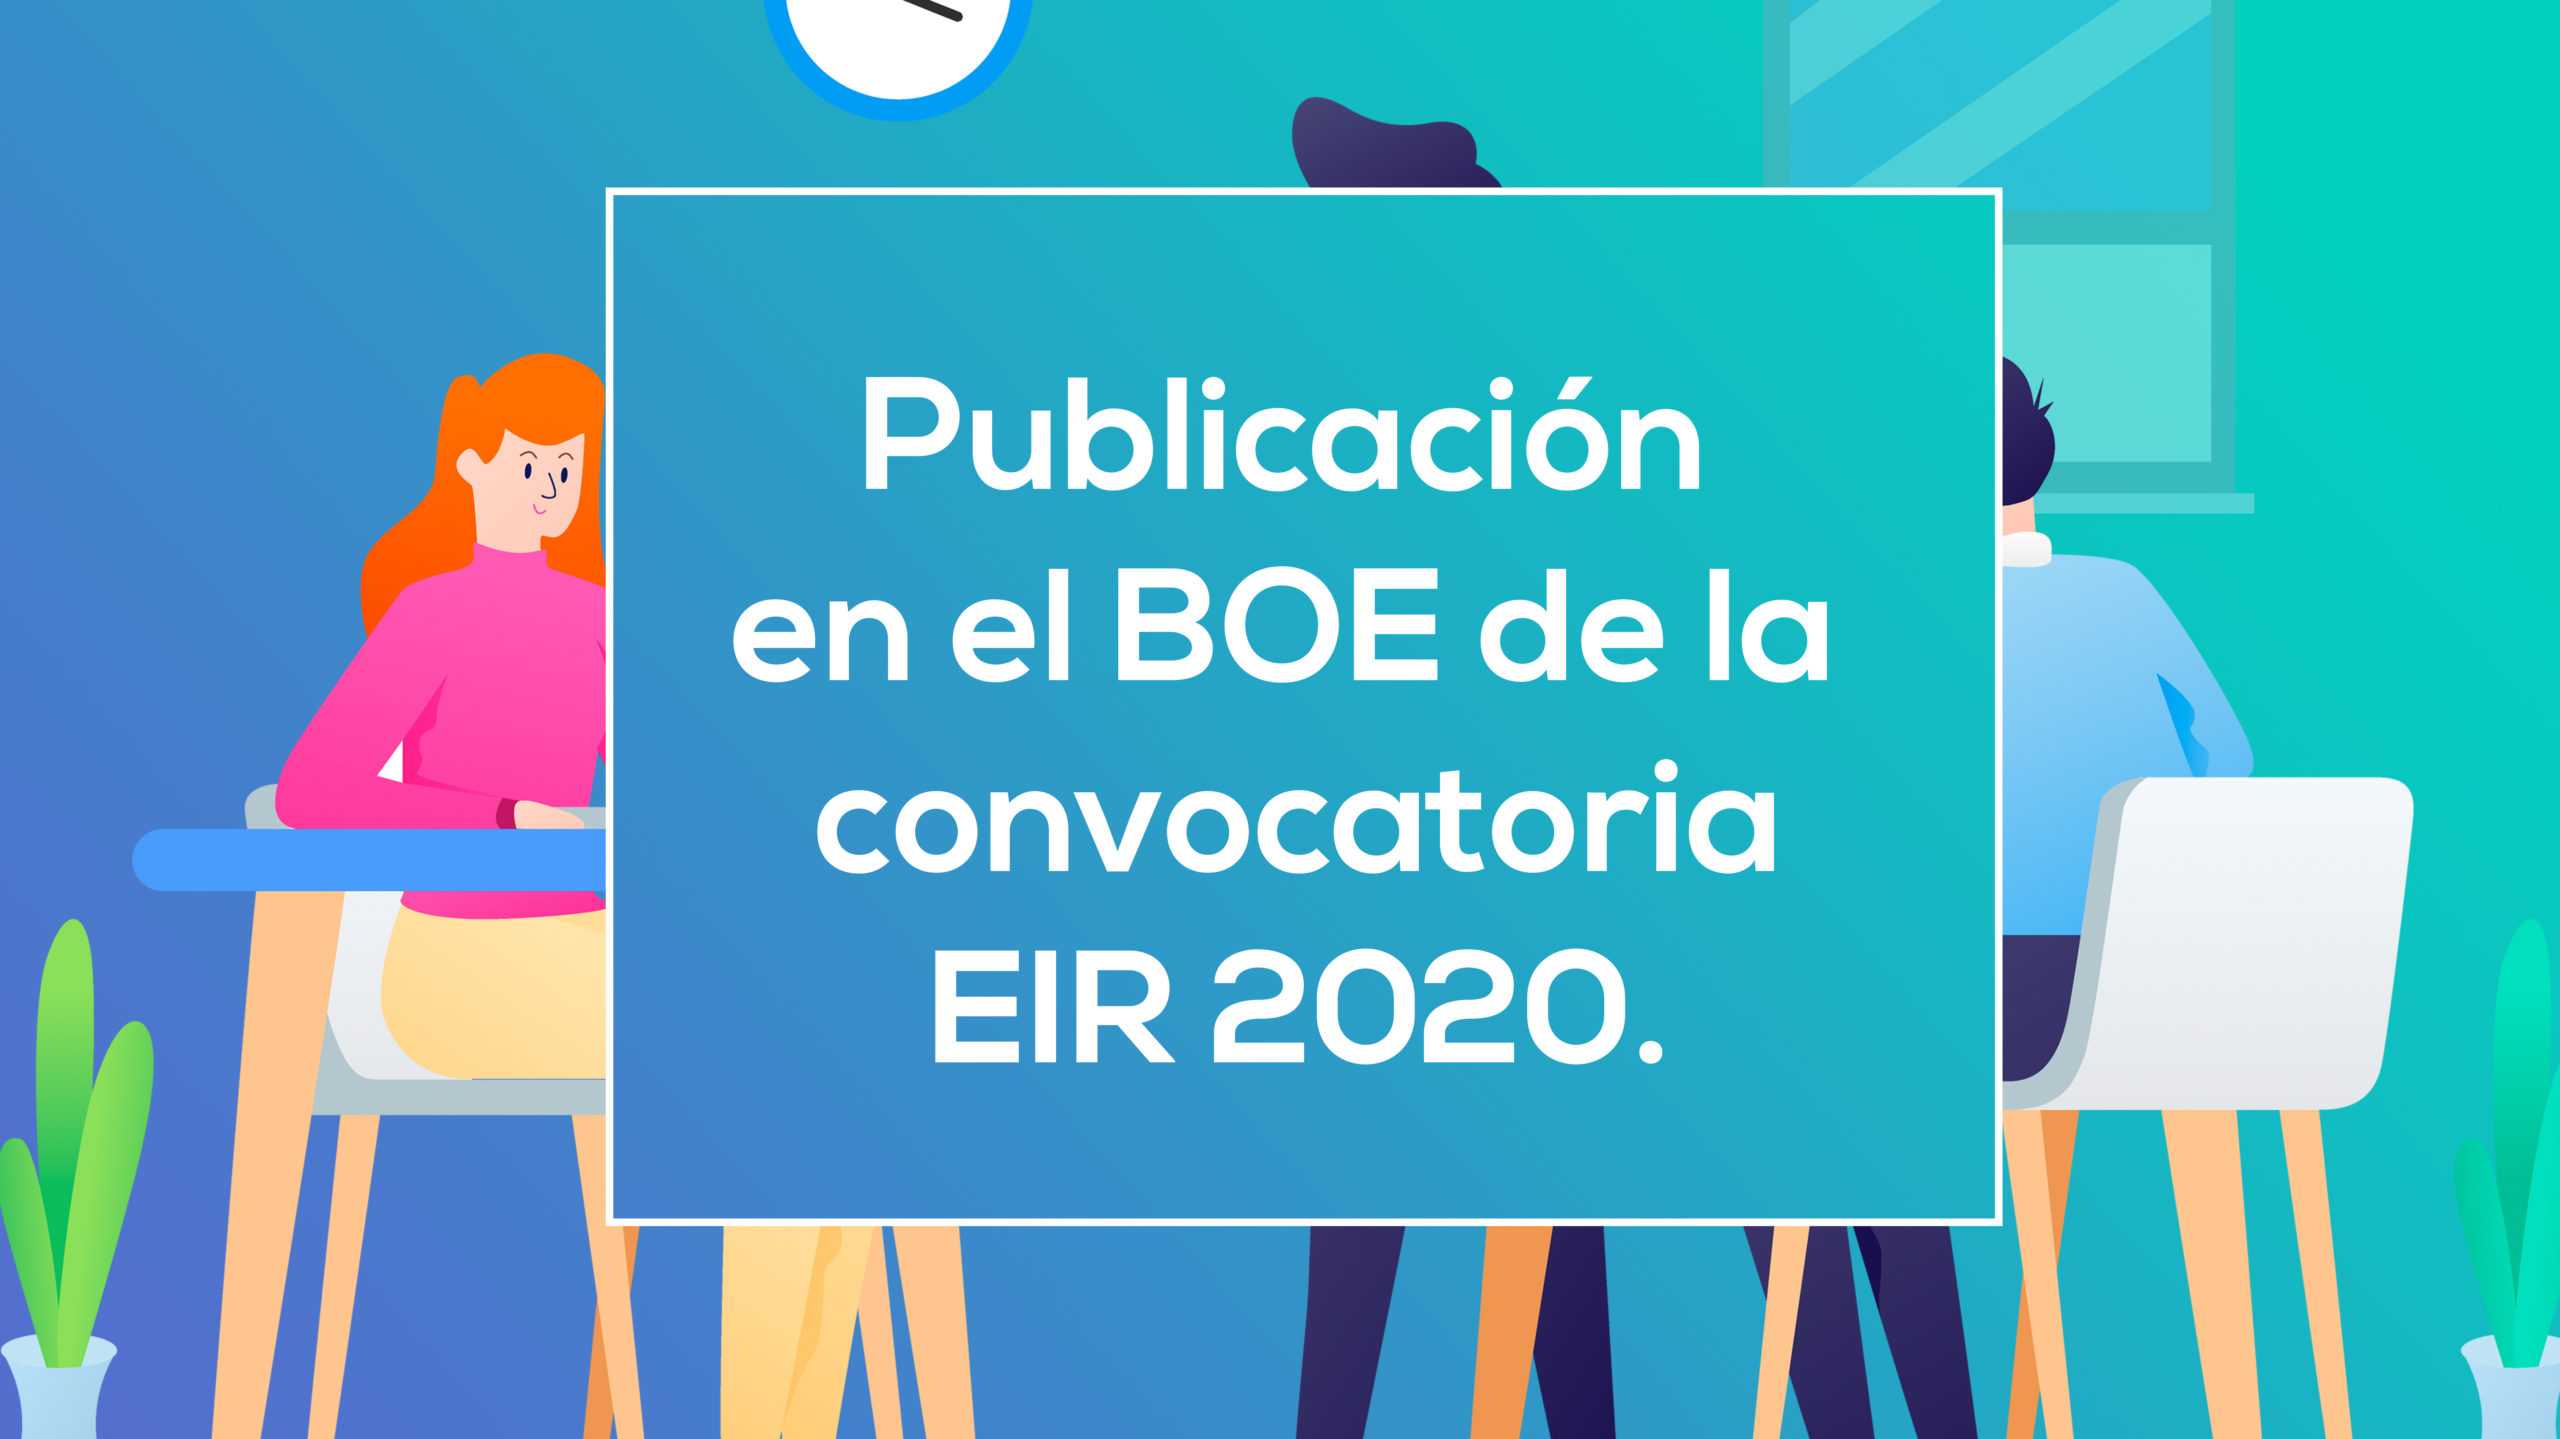 Publicación en el BOE de información sobre EIR 2020